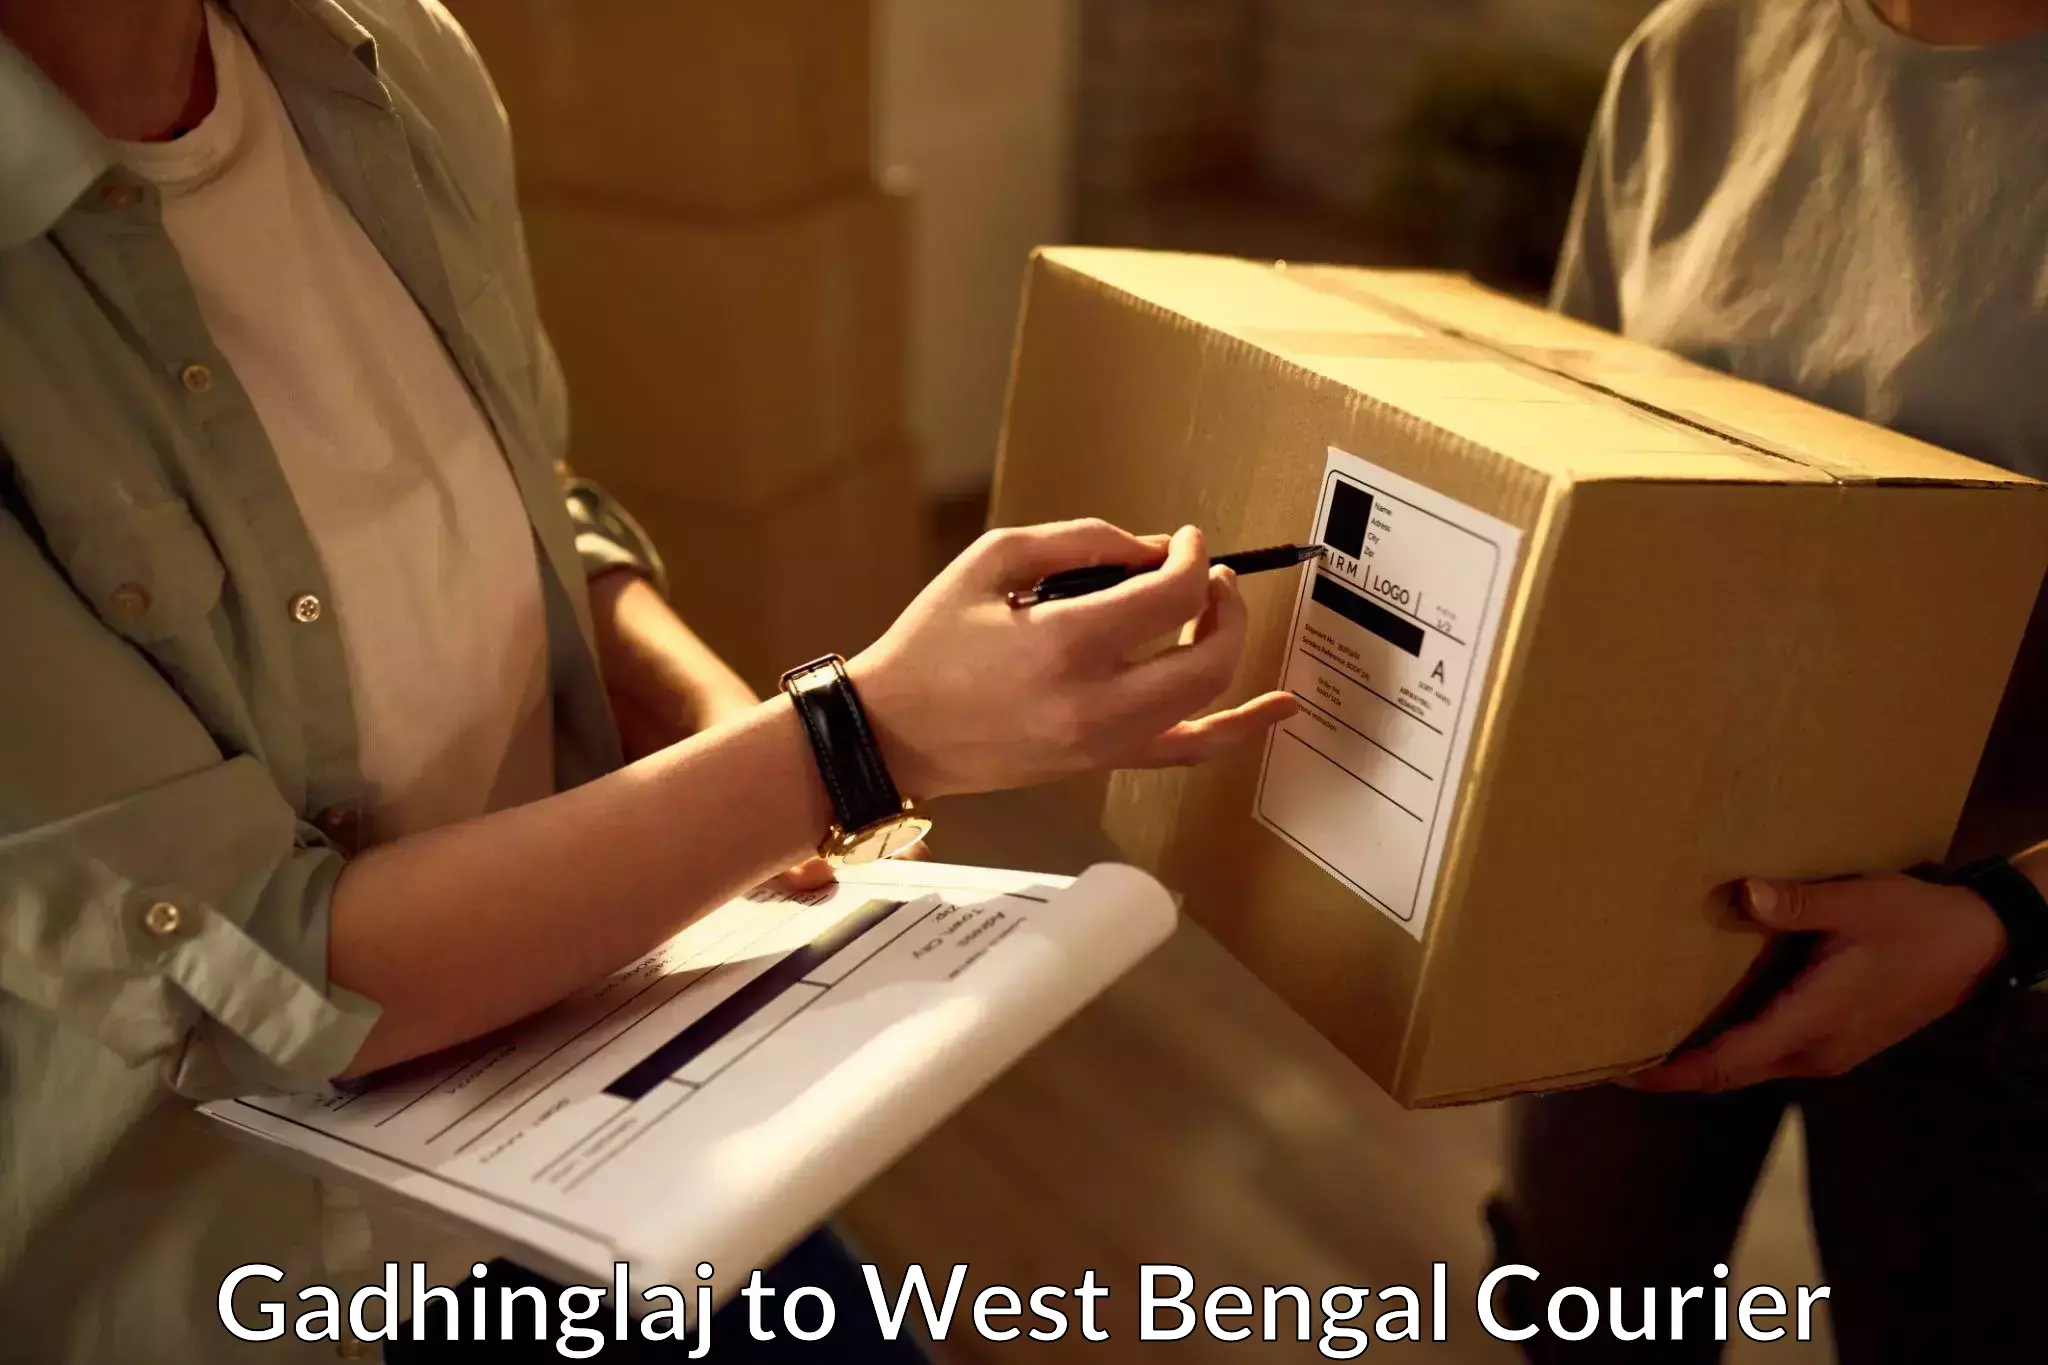 Dynamic courier operations Gadhinglaj to Guskhara